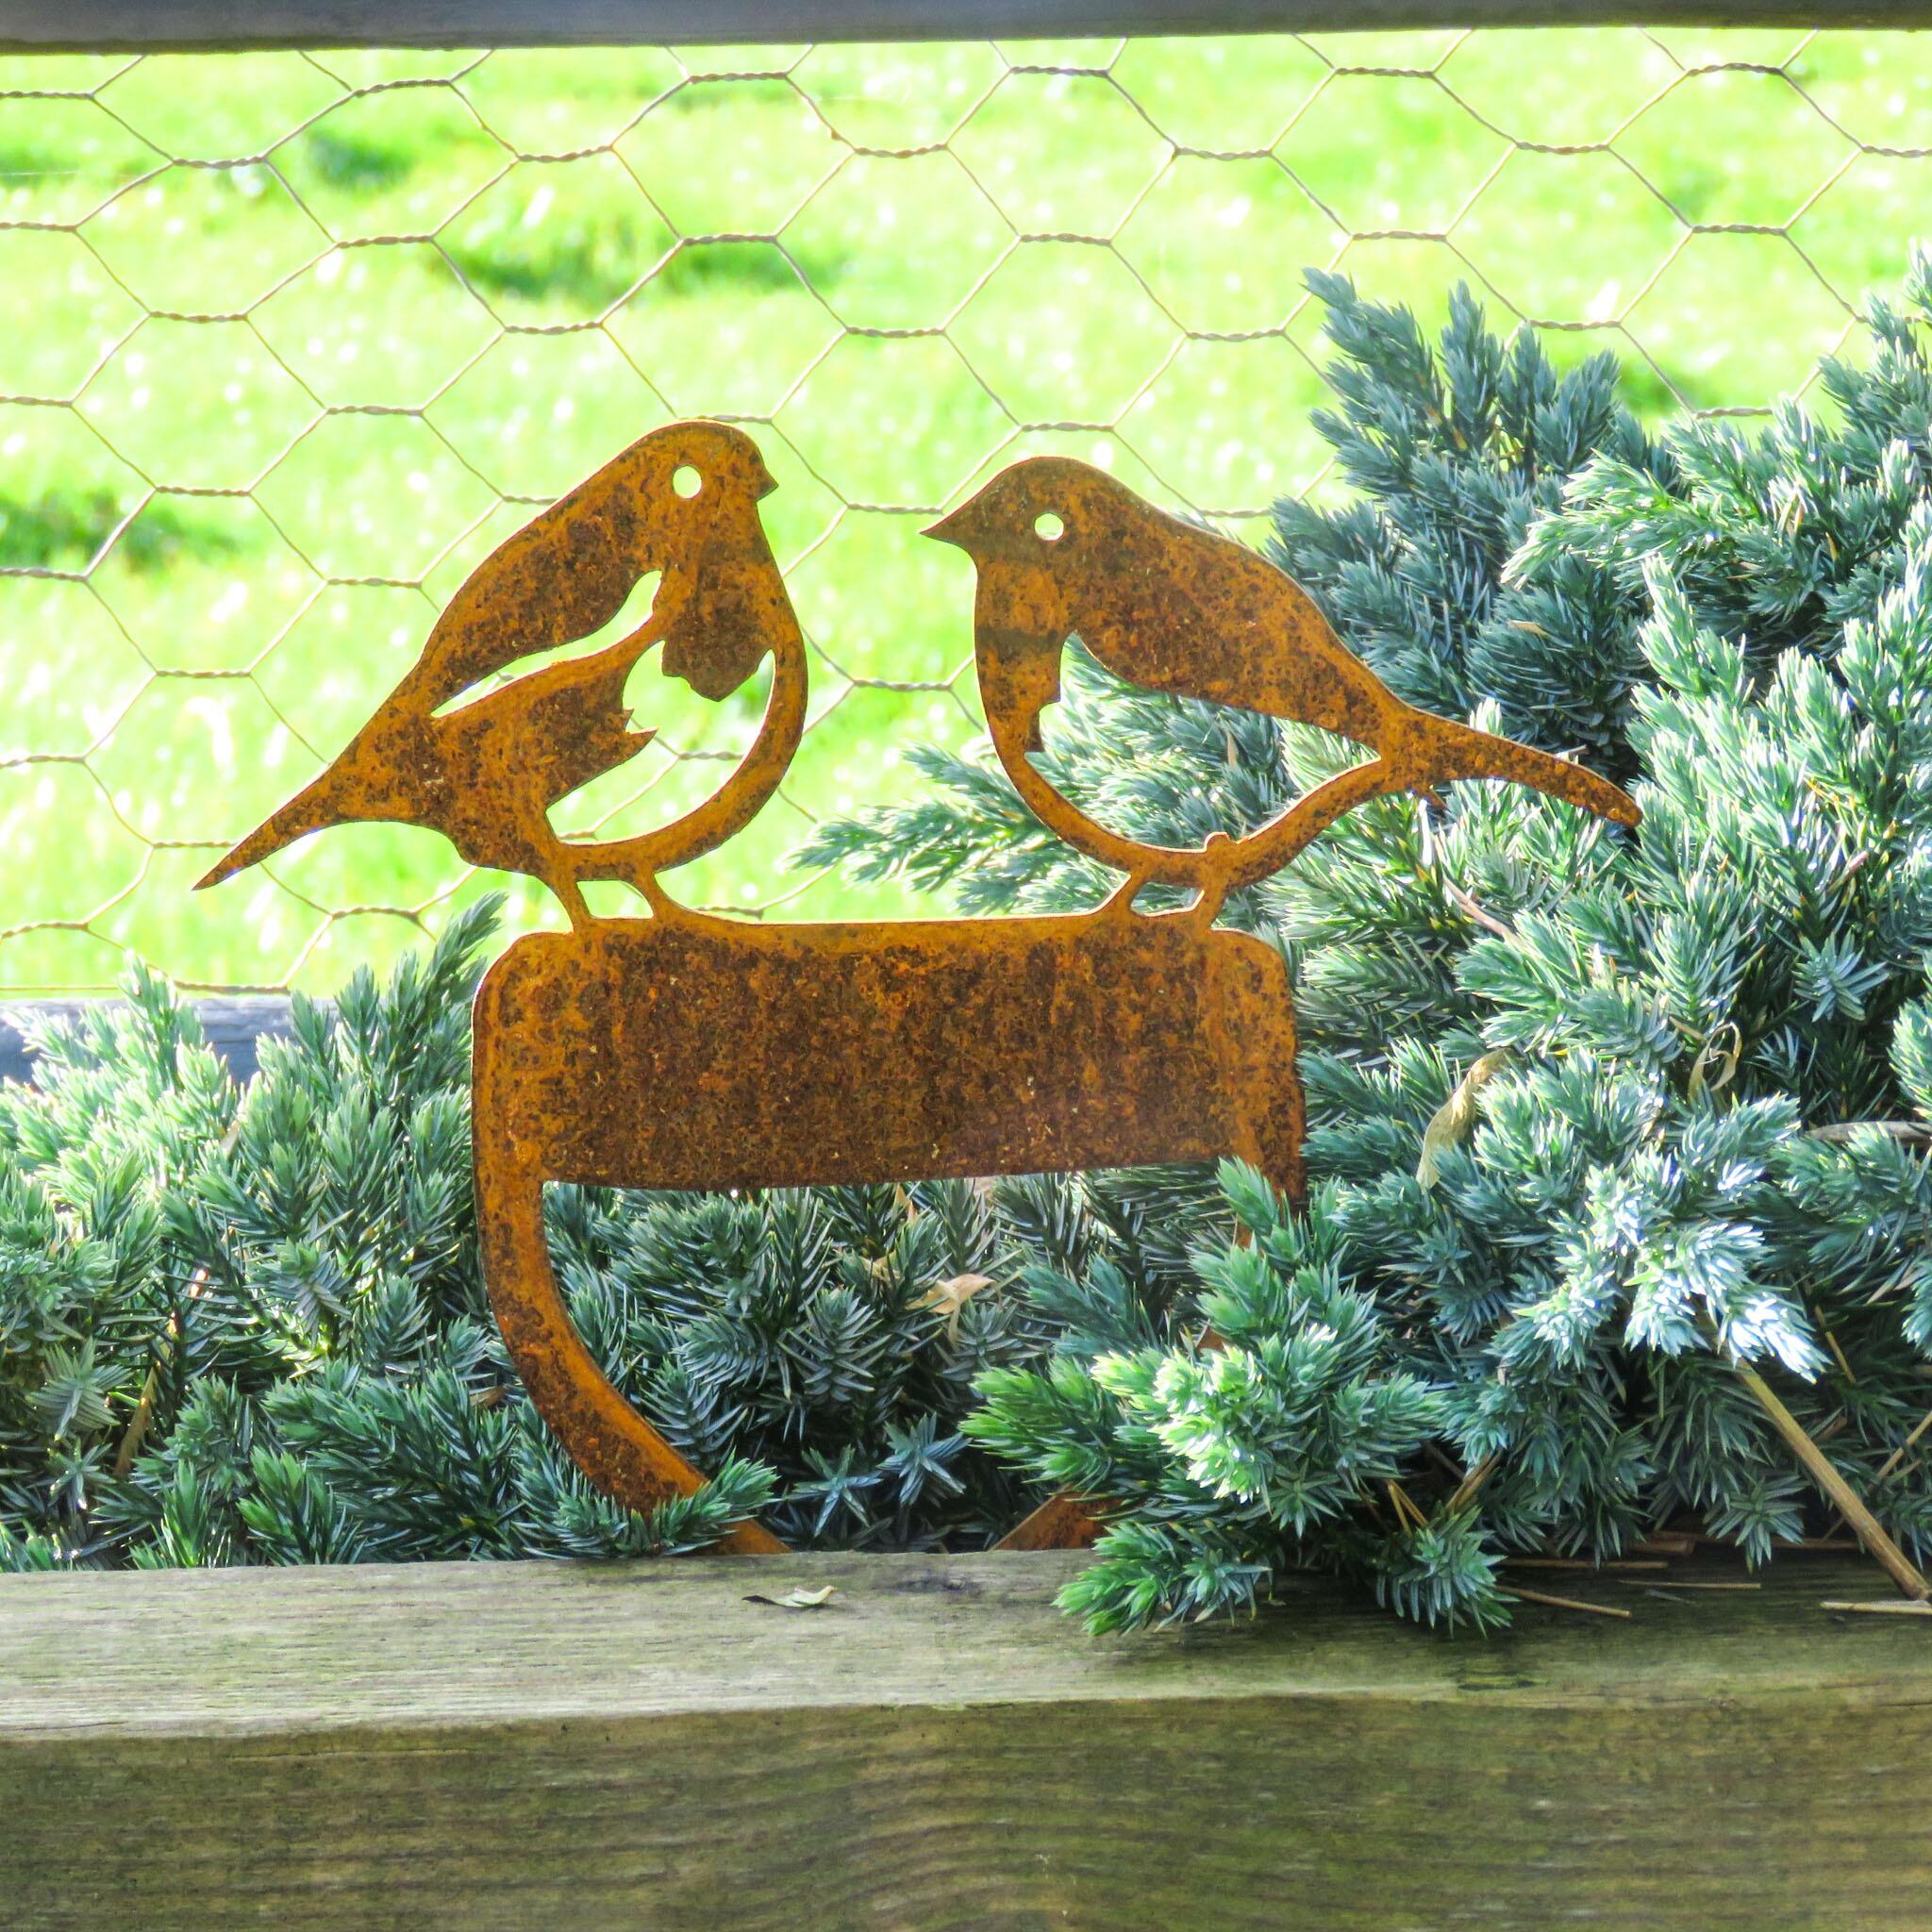 Robins on a spade garden ornament